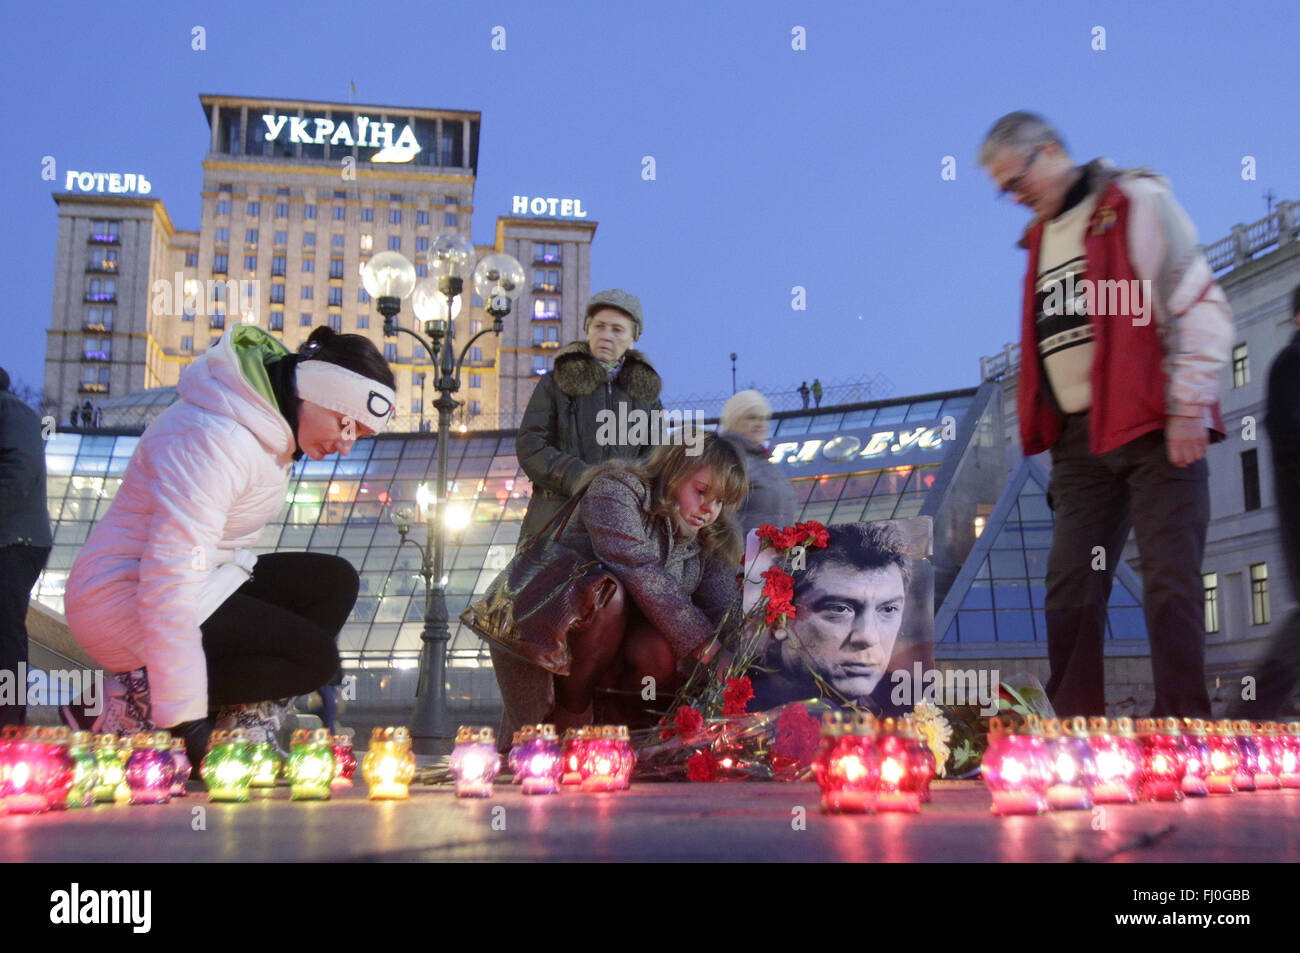 Enero 21, 2016 - ucranios encienden velas cerca de Boris Nemtsov's portrait durante una reunión para conmemorar Boris Nemtsov en la Plaza de la Independencia en Kiev, Ucrania el 27 de febrero de 2016. El político opositor ruso Boris Nemtsov fue asesinado en los muros del Kremlin en Moscú hace un año. © Anatolii Stepanov/Zuma alambre/Alamy Live News Foto de stock